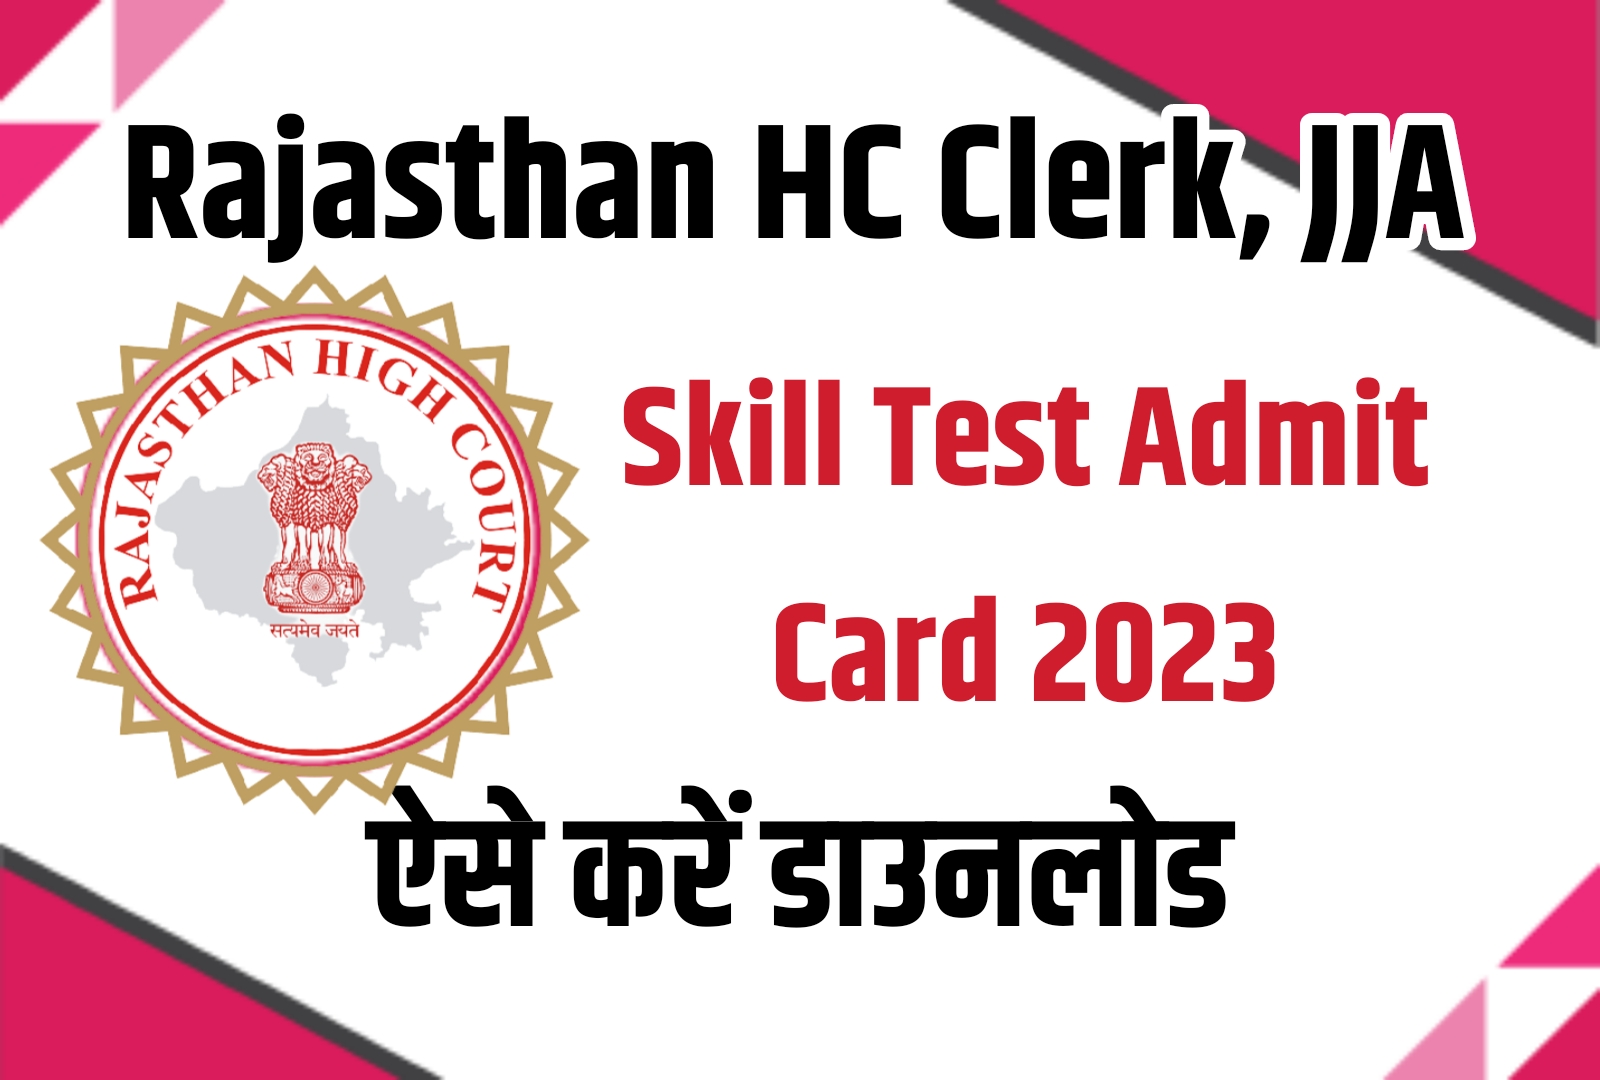 Rajasthan HC Clerk, JJA Skill Test Admit Card 2023